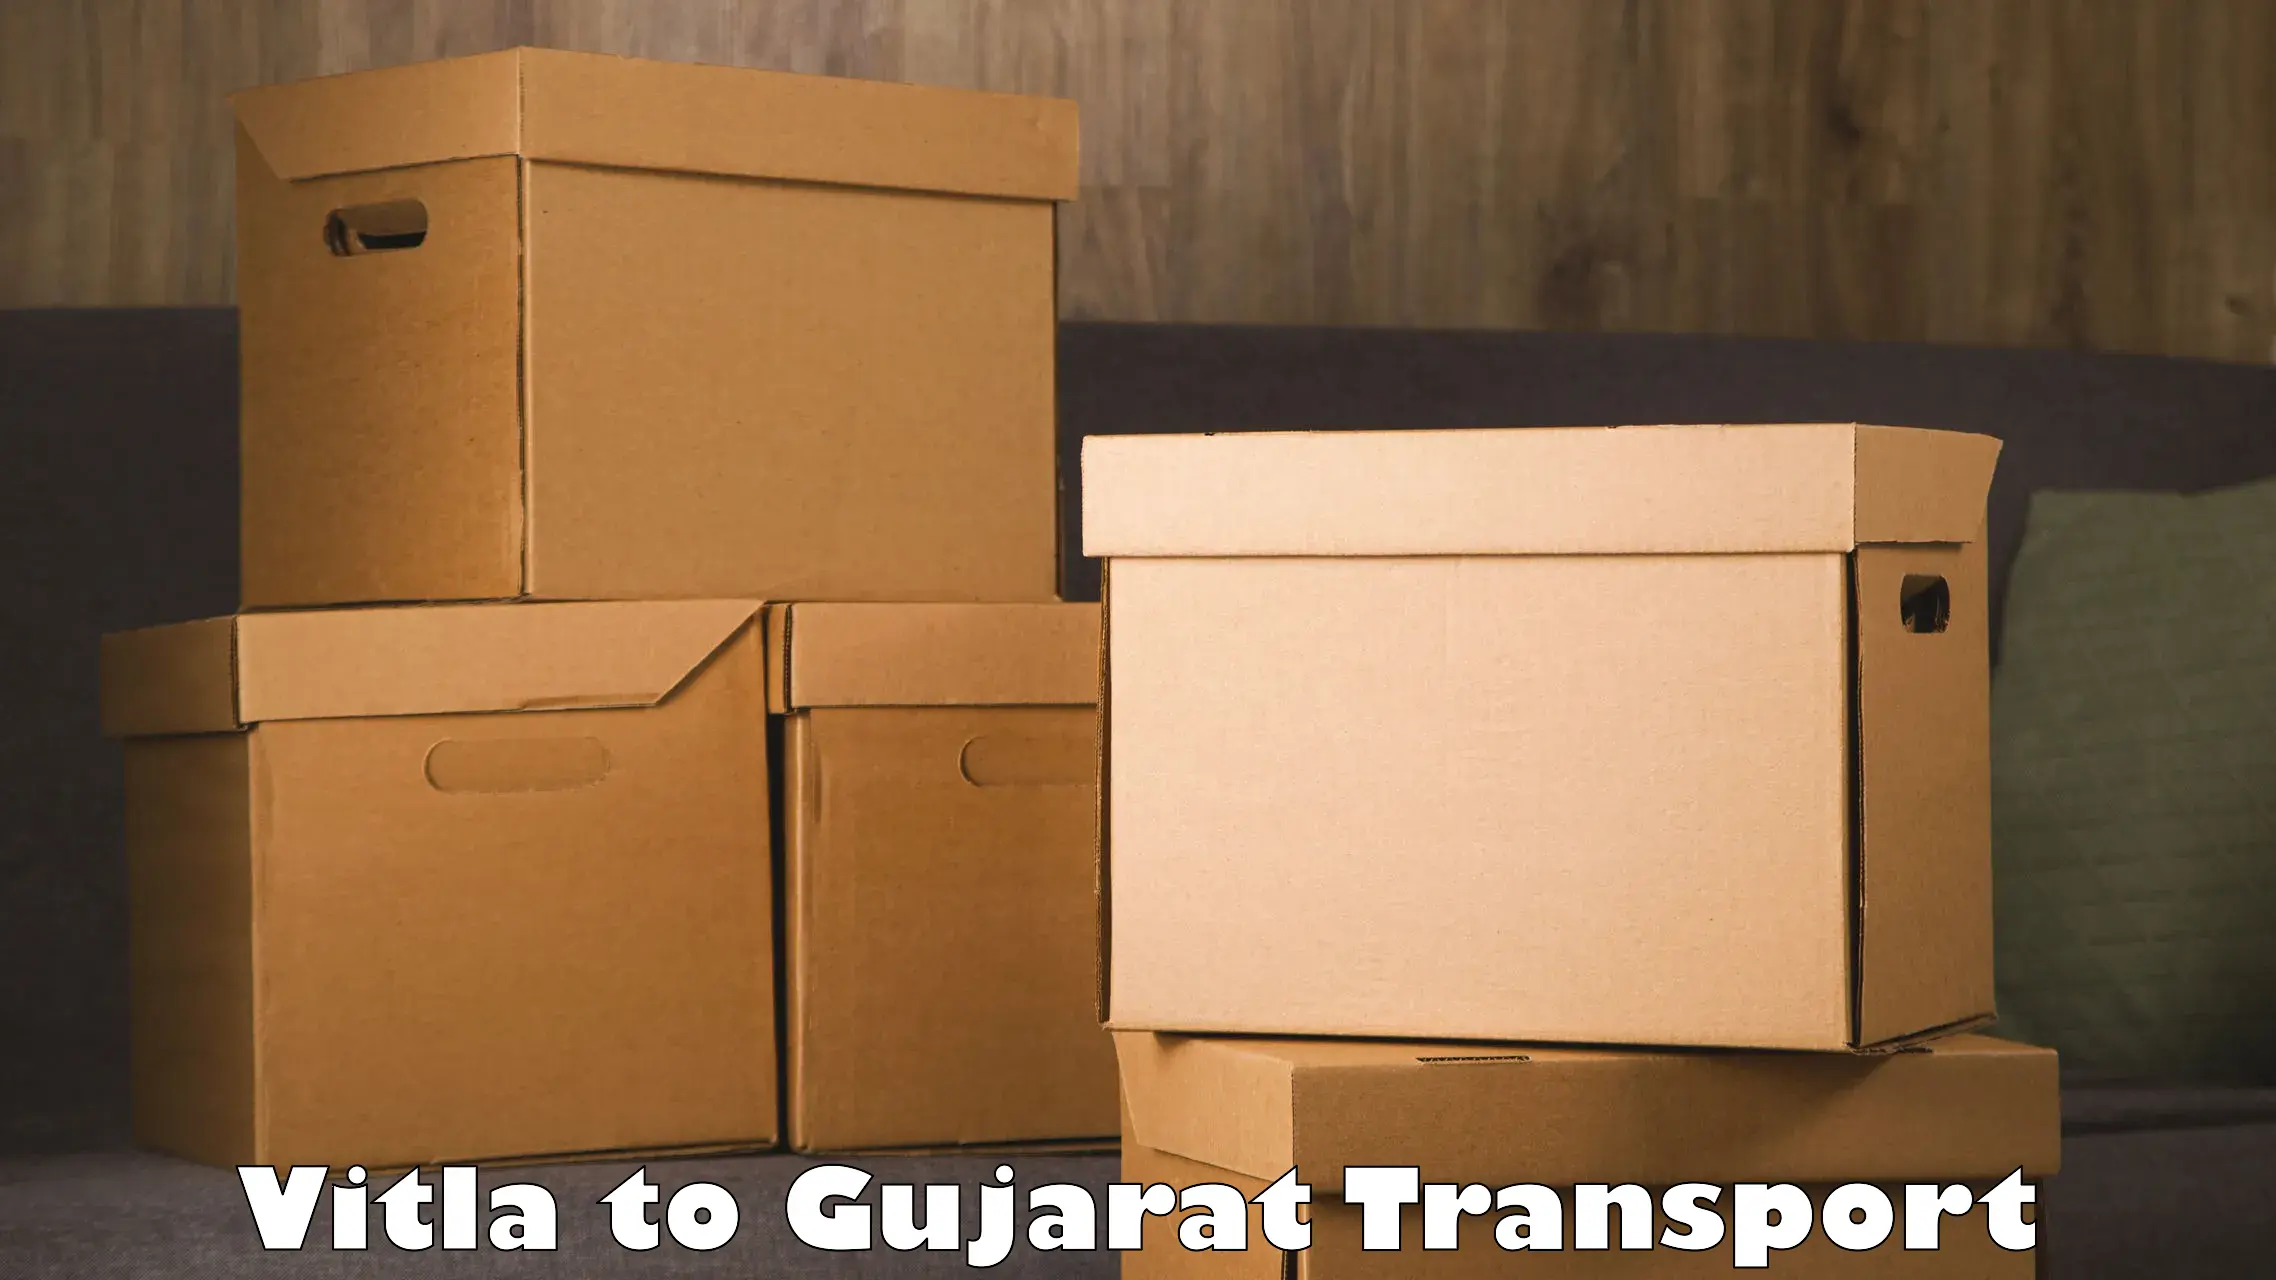 International cargo transportation services Vitla to Gujarat